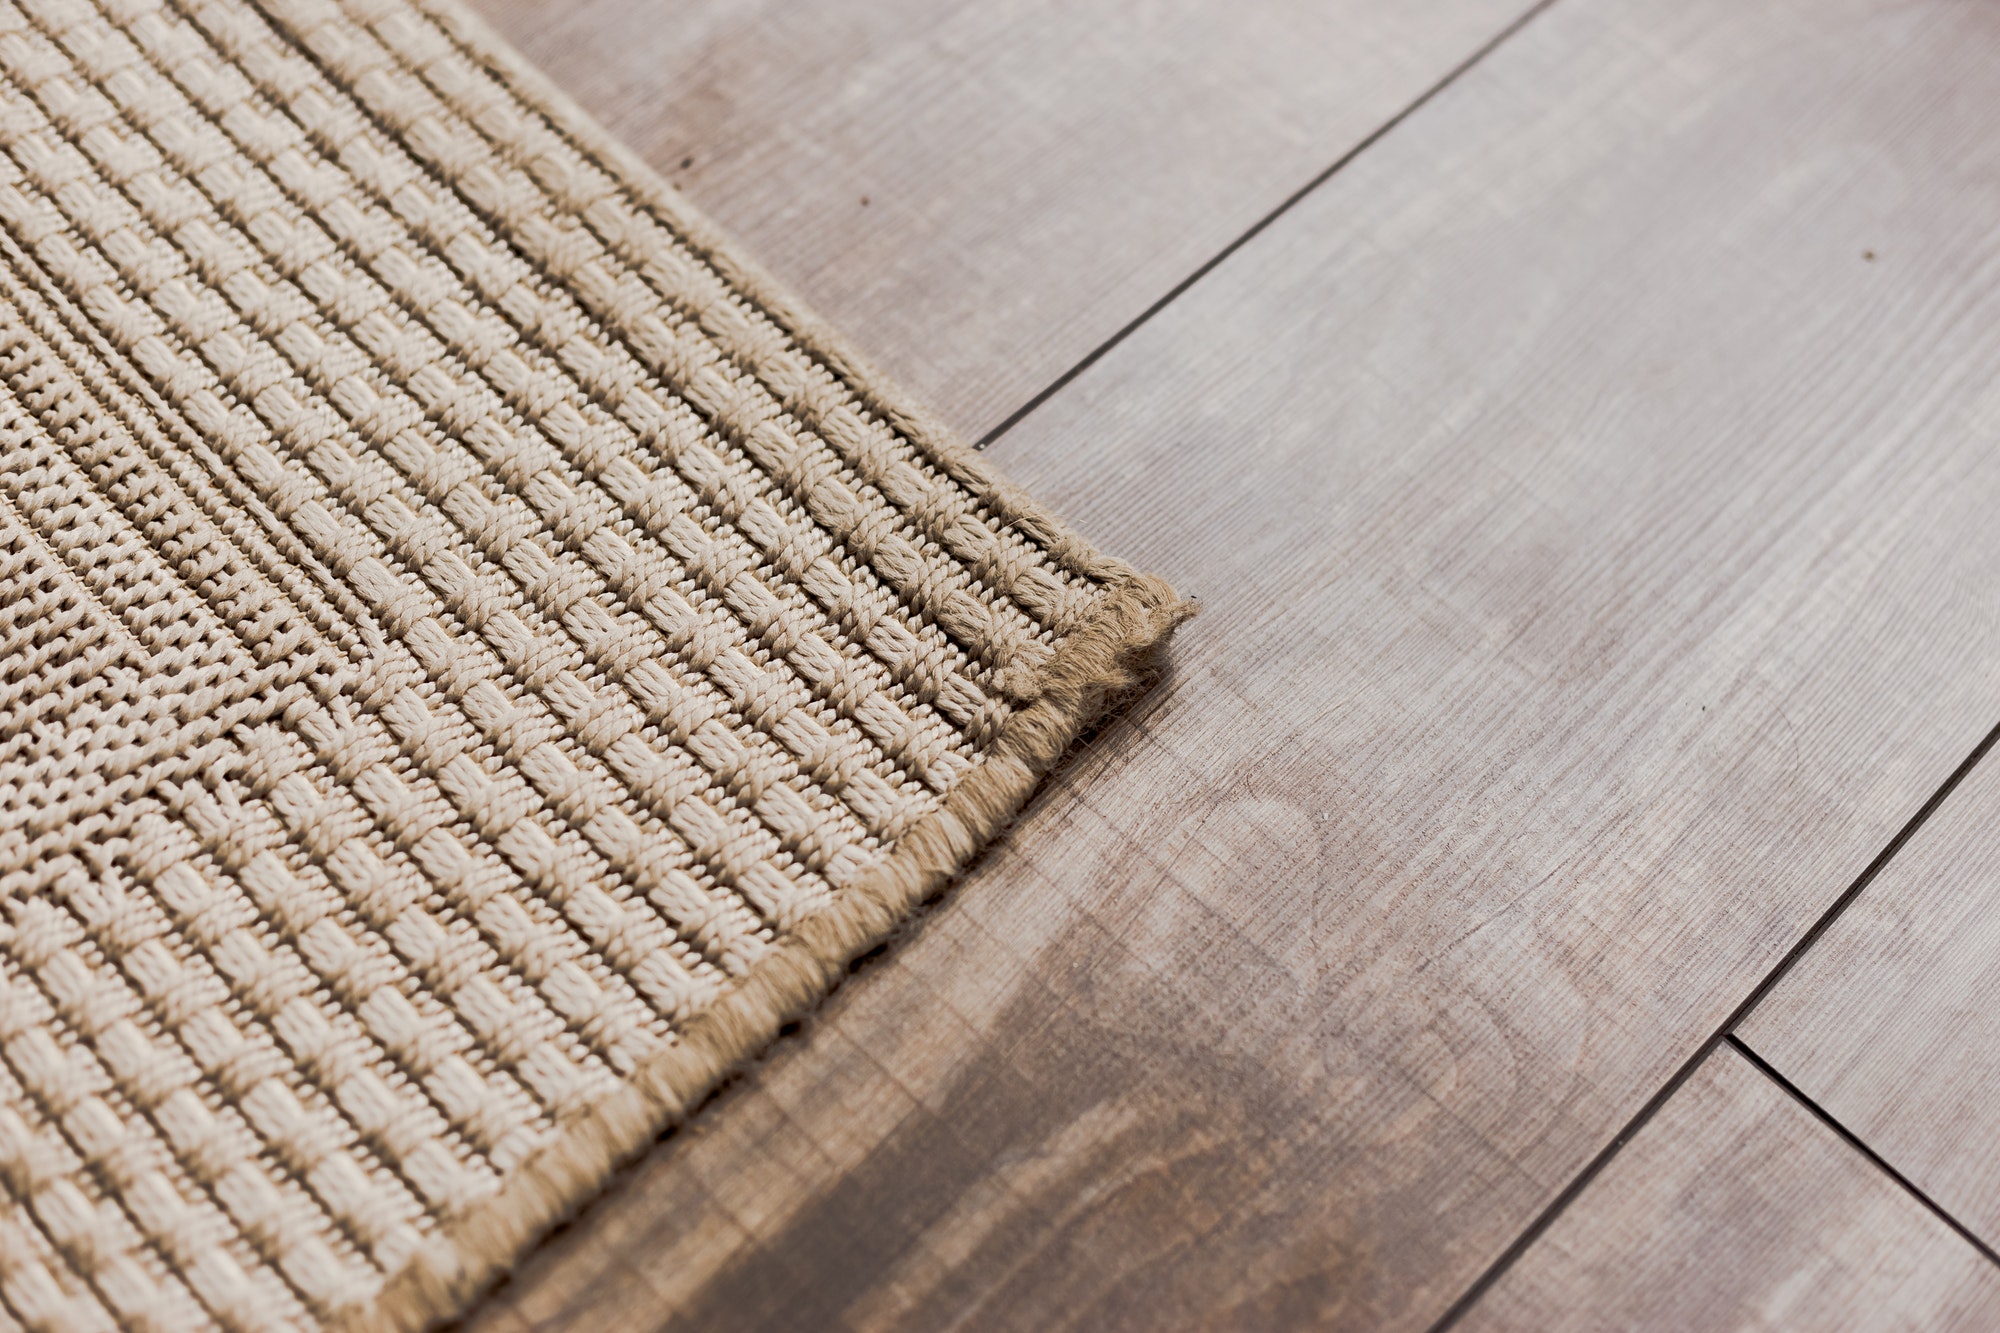 Laminate parquete floor with beige soft carpet